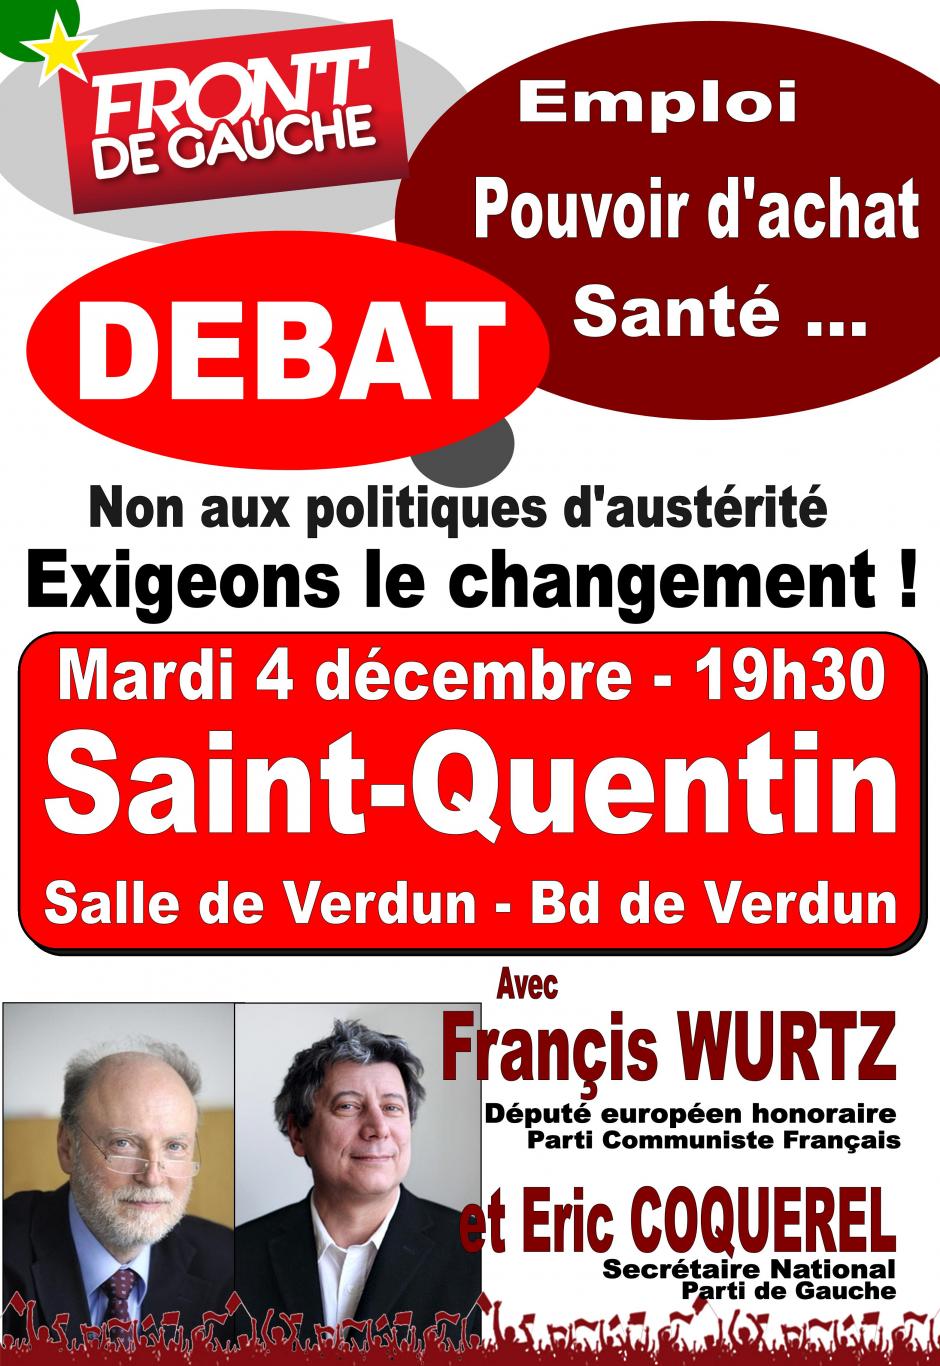 Le mardi 4 Décembre DEBAT à Saint Quentin avec Francis WURTZ et Eric COQUEREL